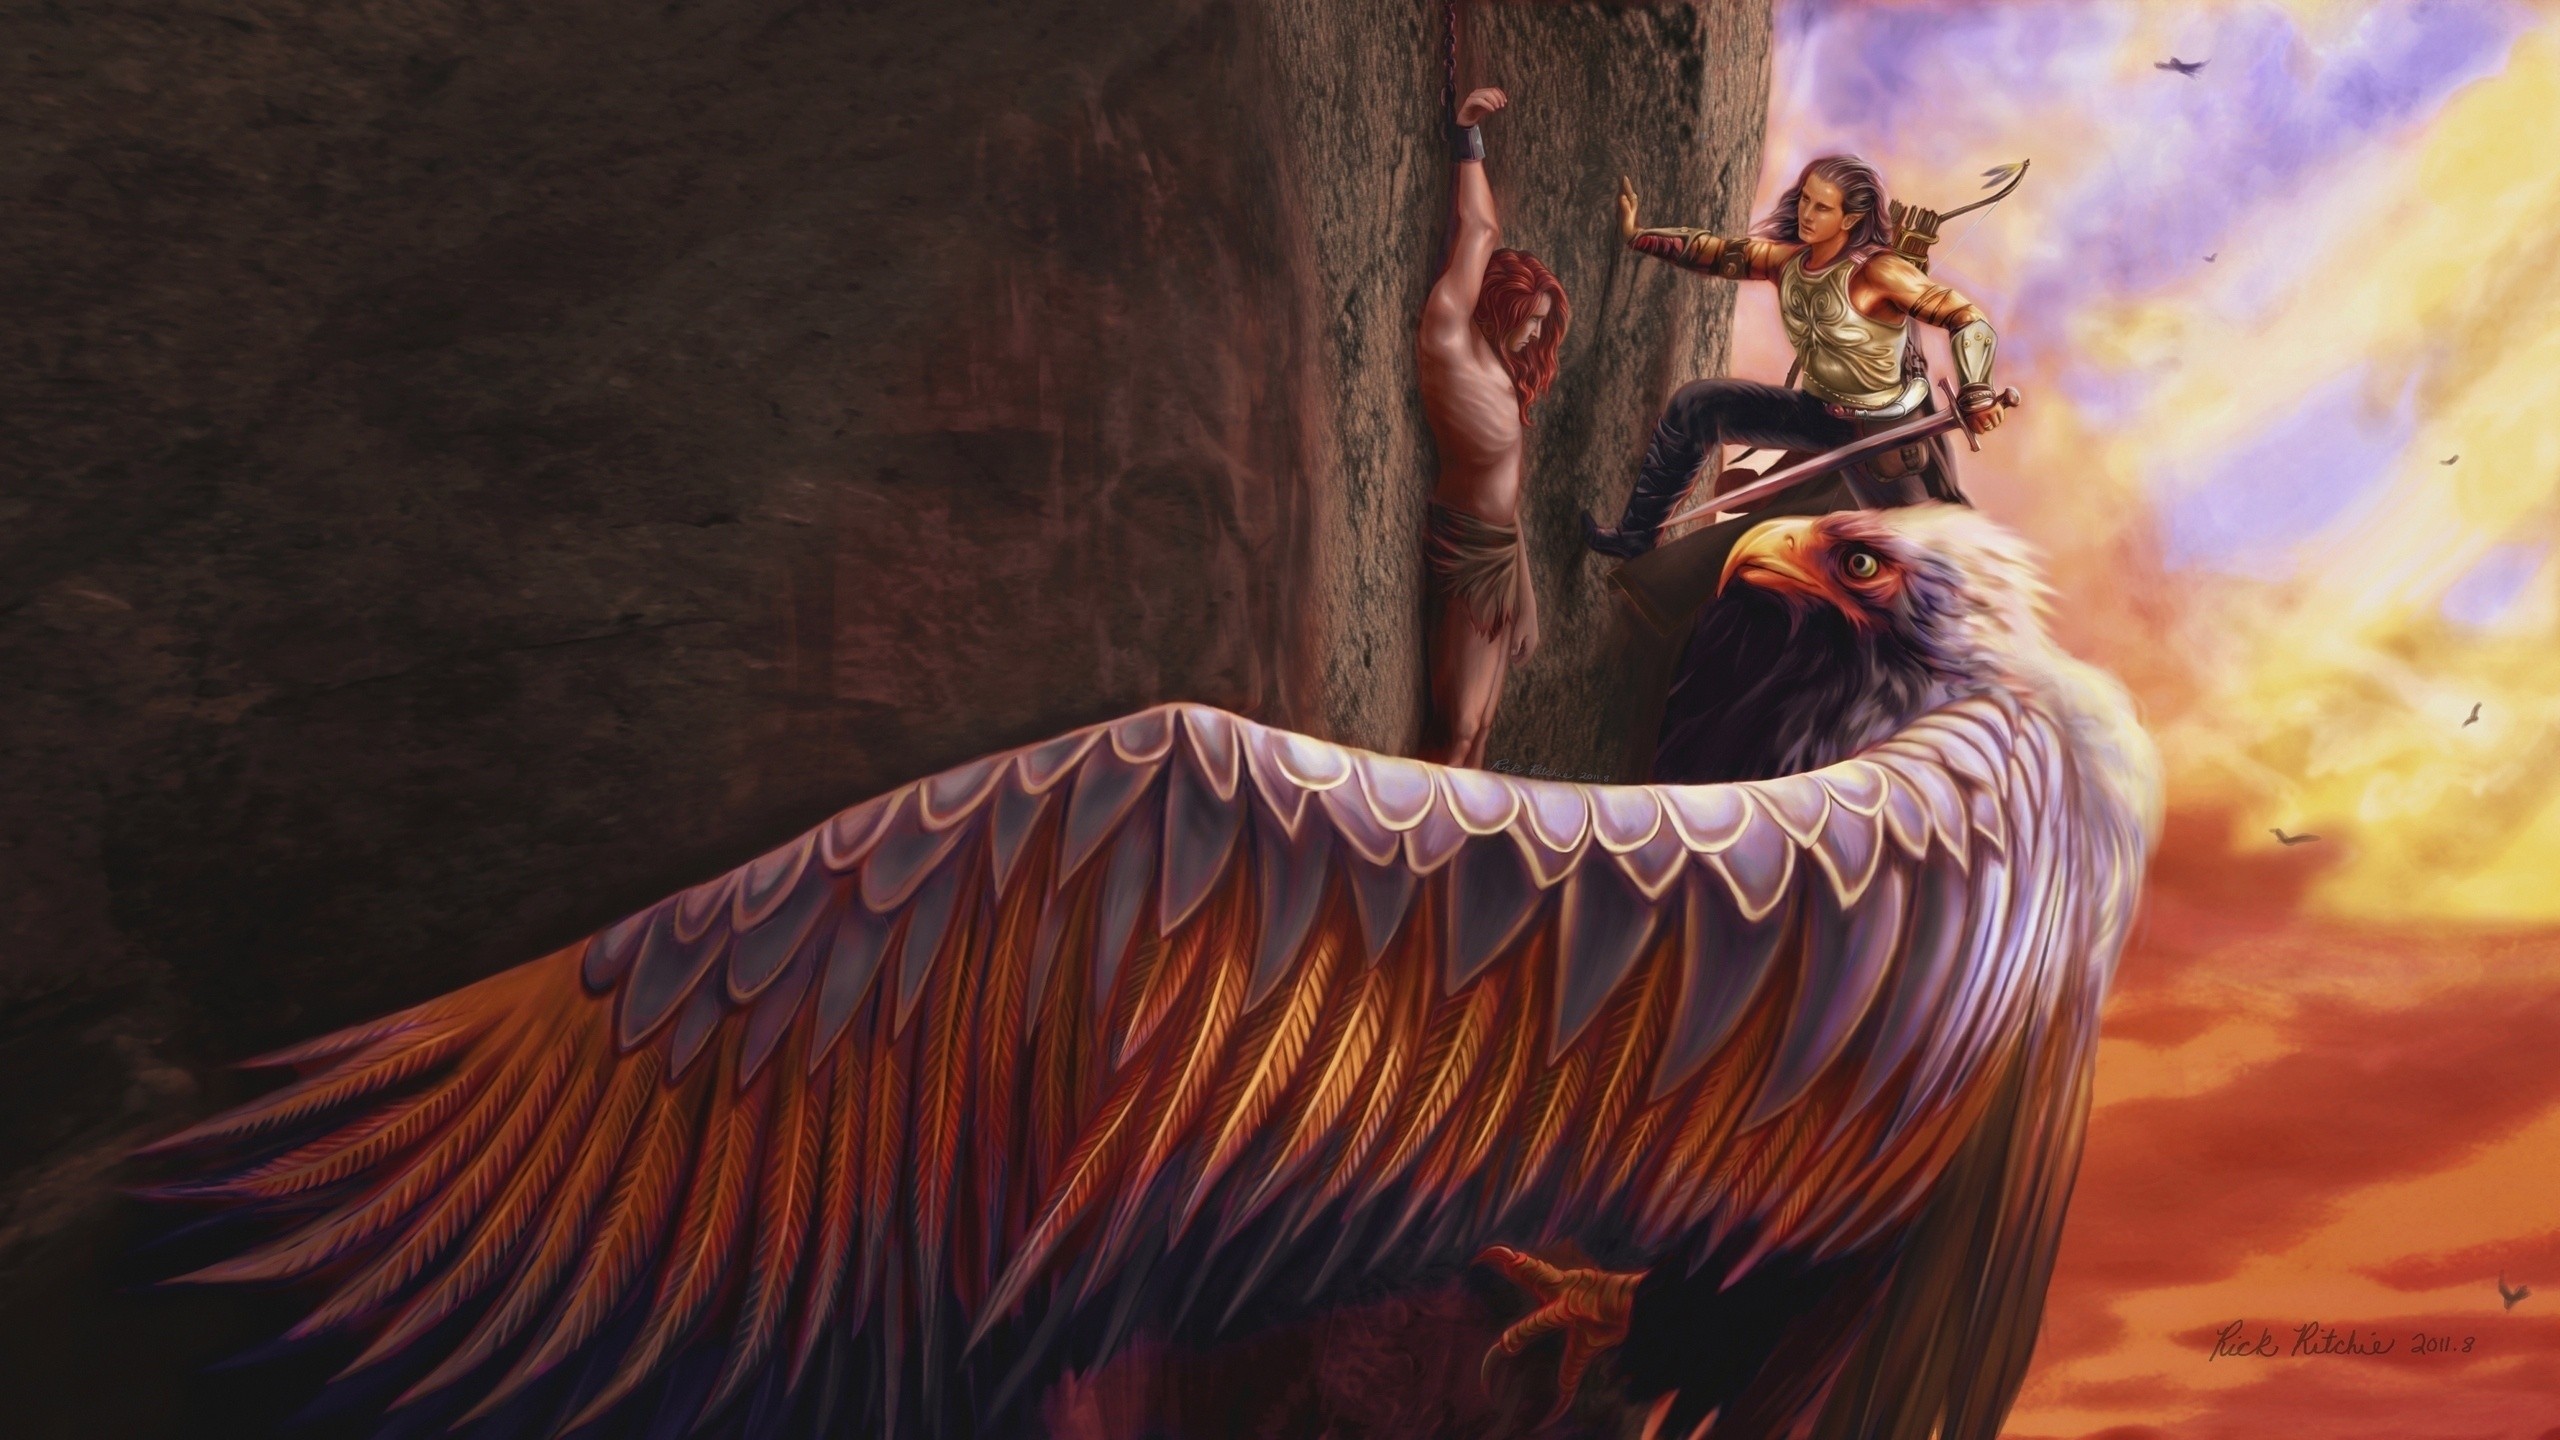 General 2560x1440 mythology eagle fantasy art